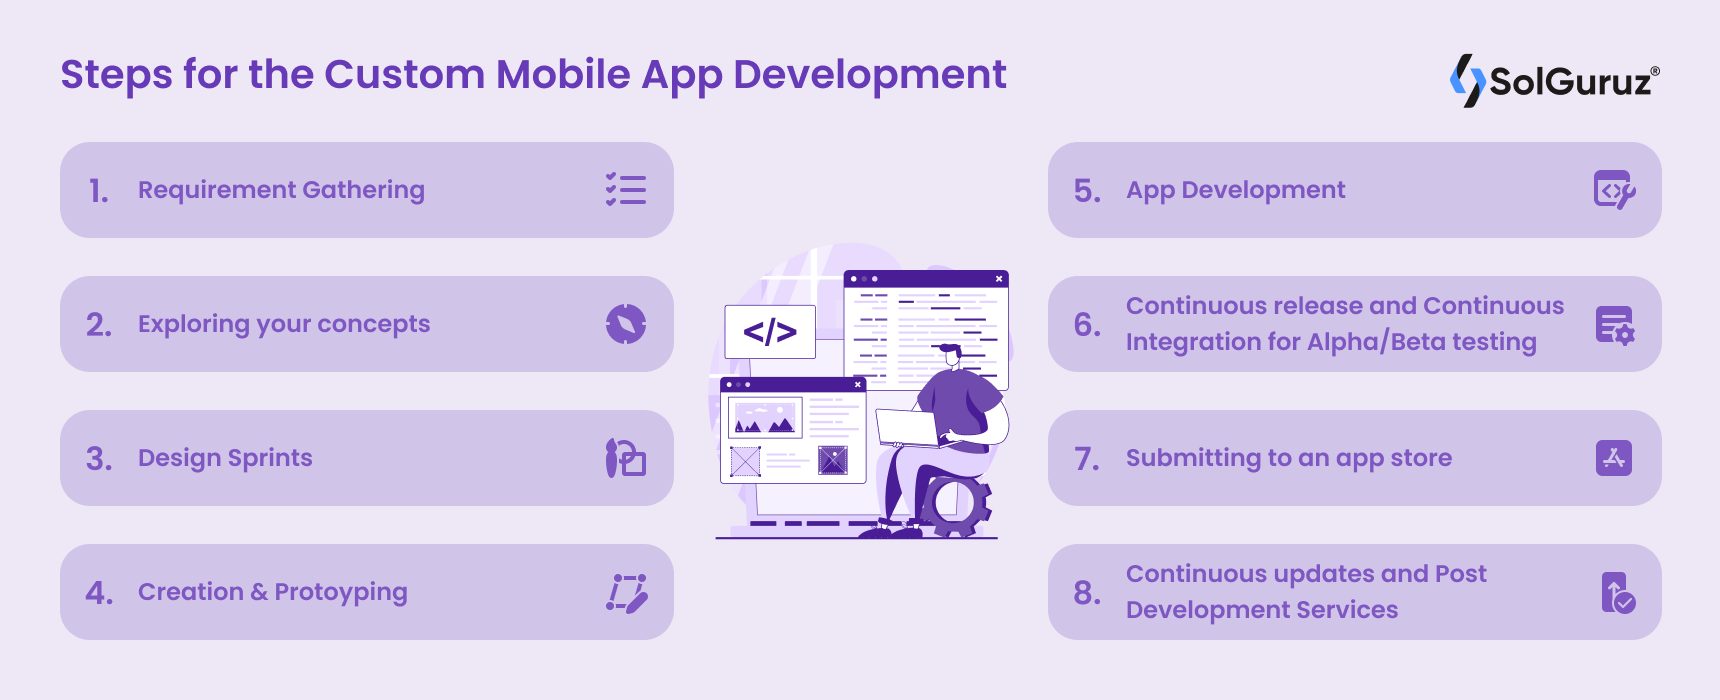 Steps for the Custom Mobile App Development